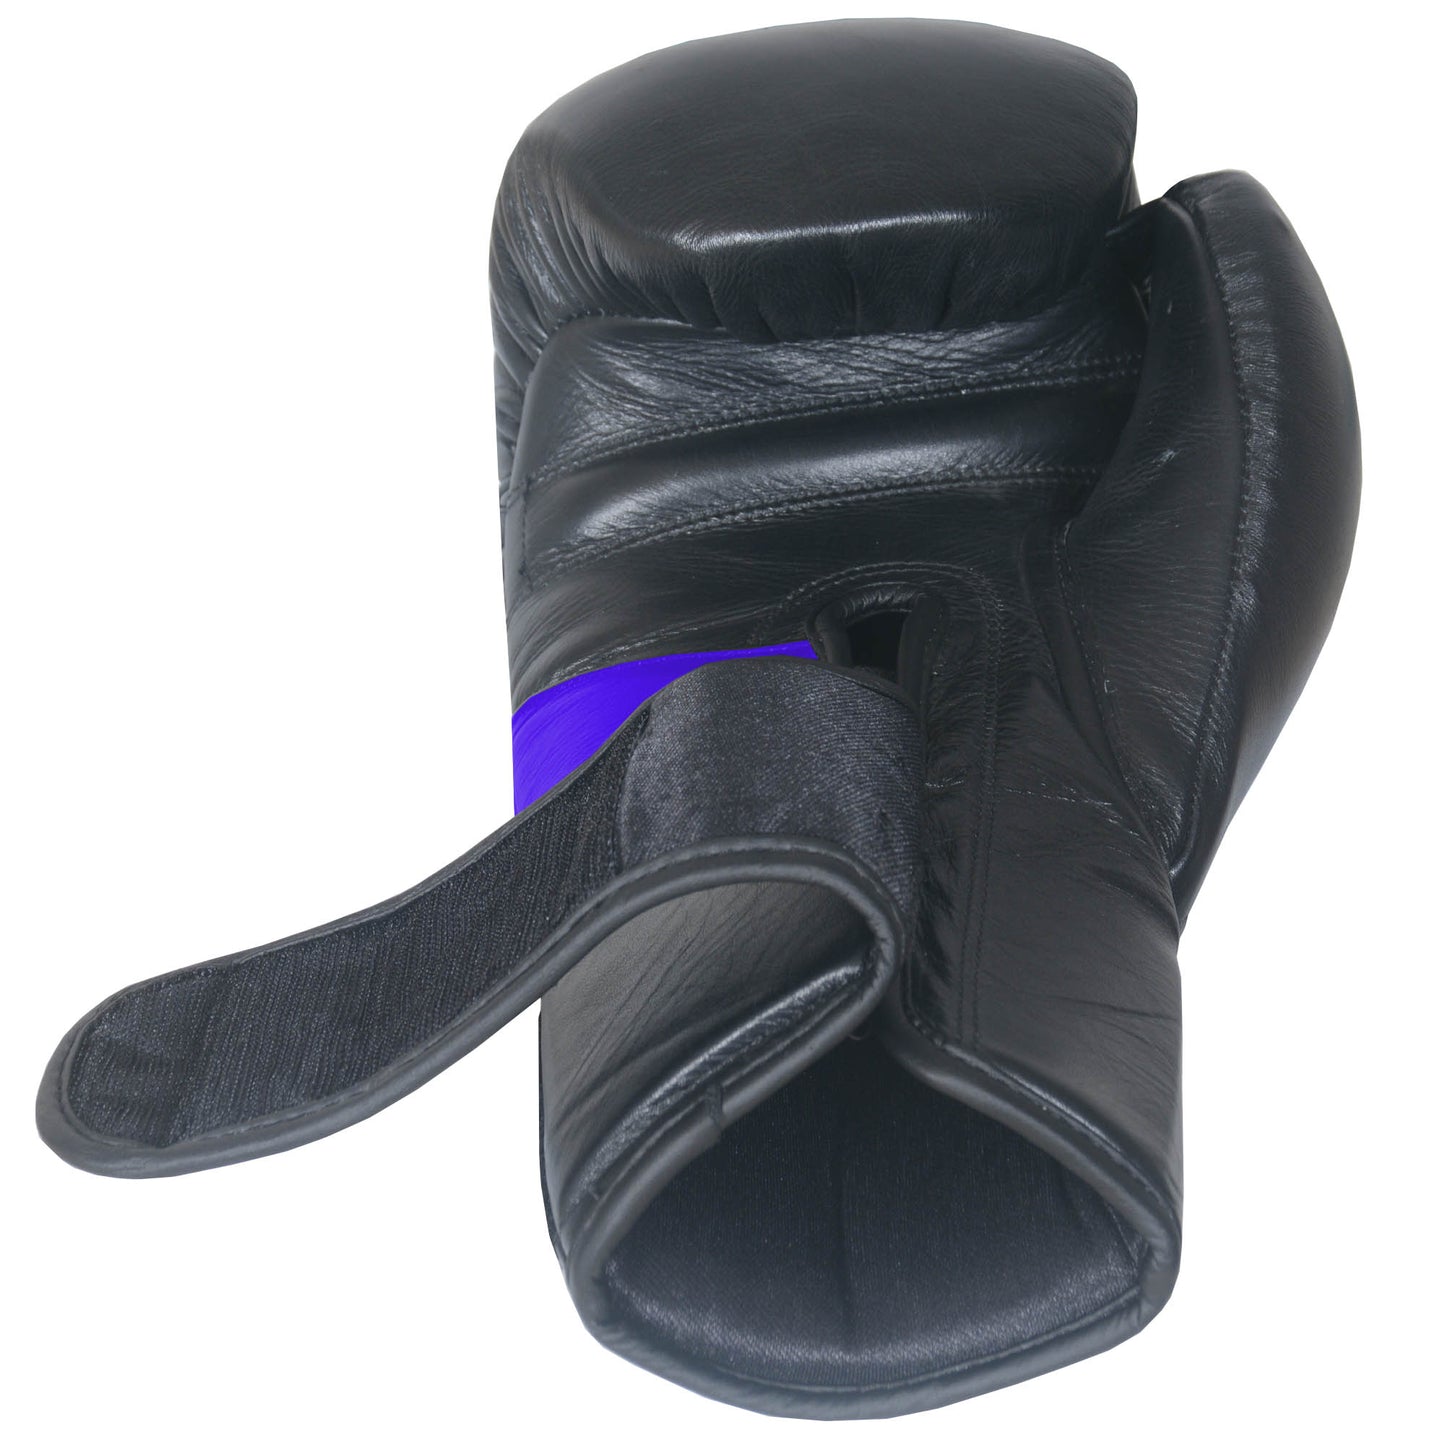 IBRO Iconic PRO Leather Boxing Training Gloves BlackBlue